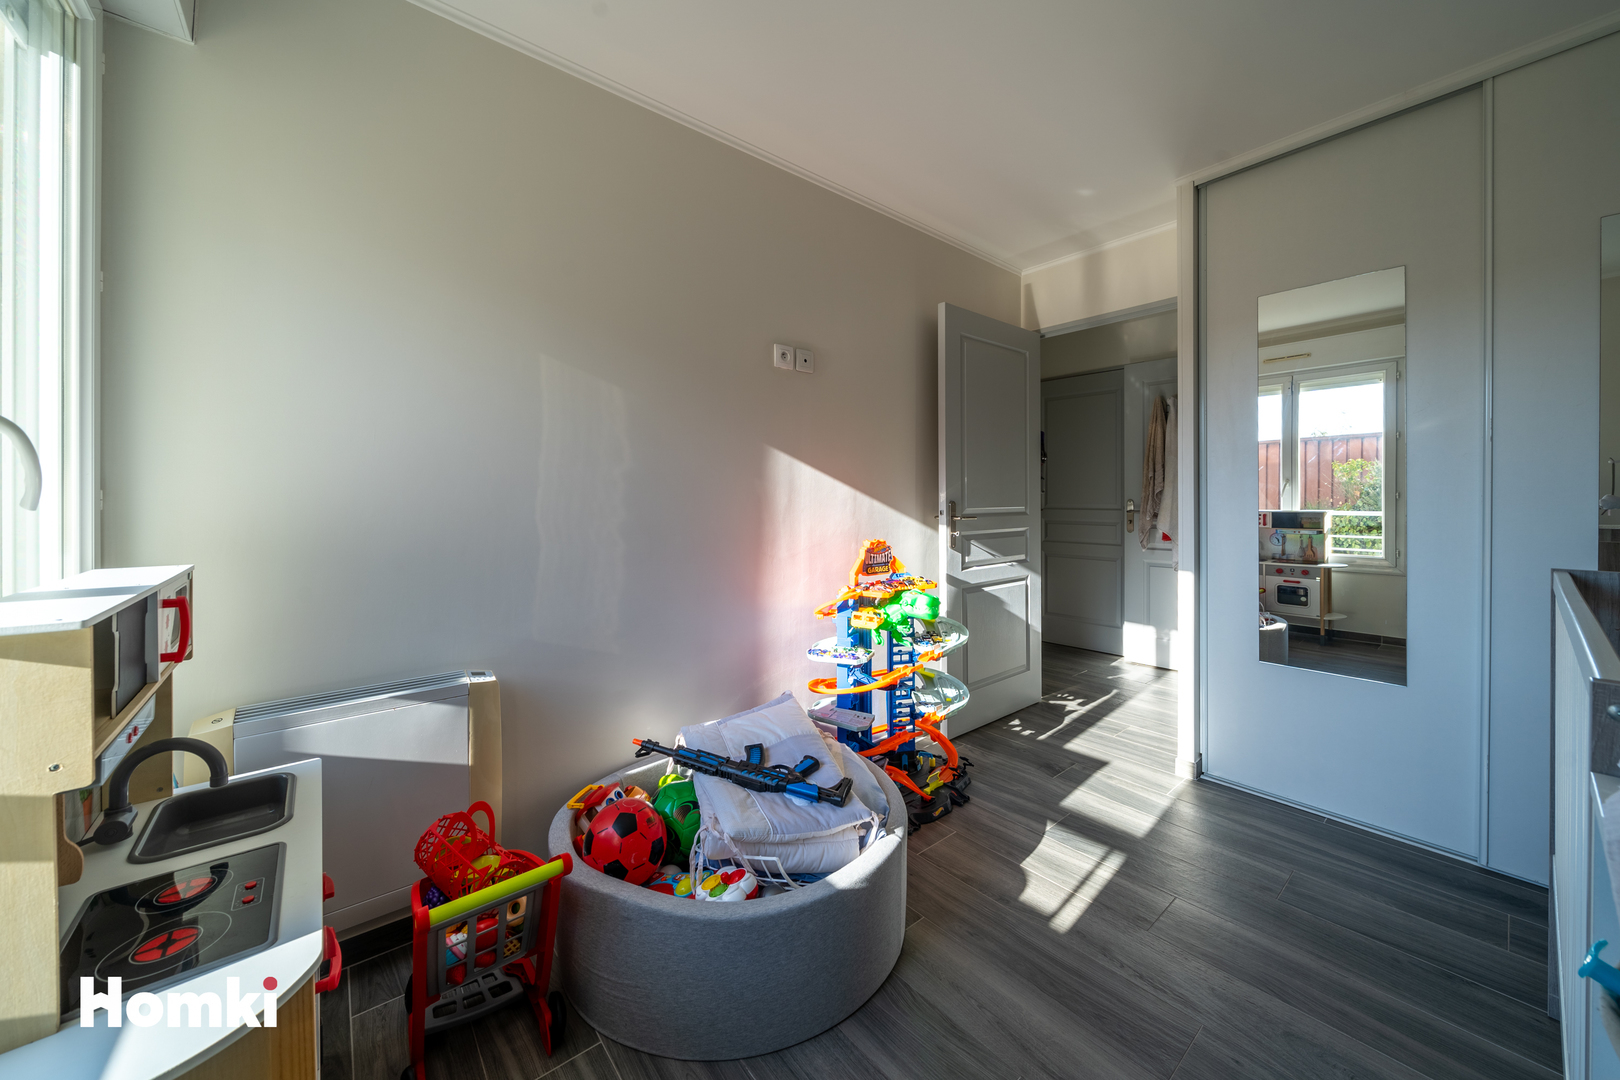 Homki - Vente Appartement  de 40.0 m² à Cagnes-sur-Mer 06800